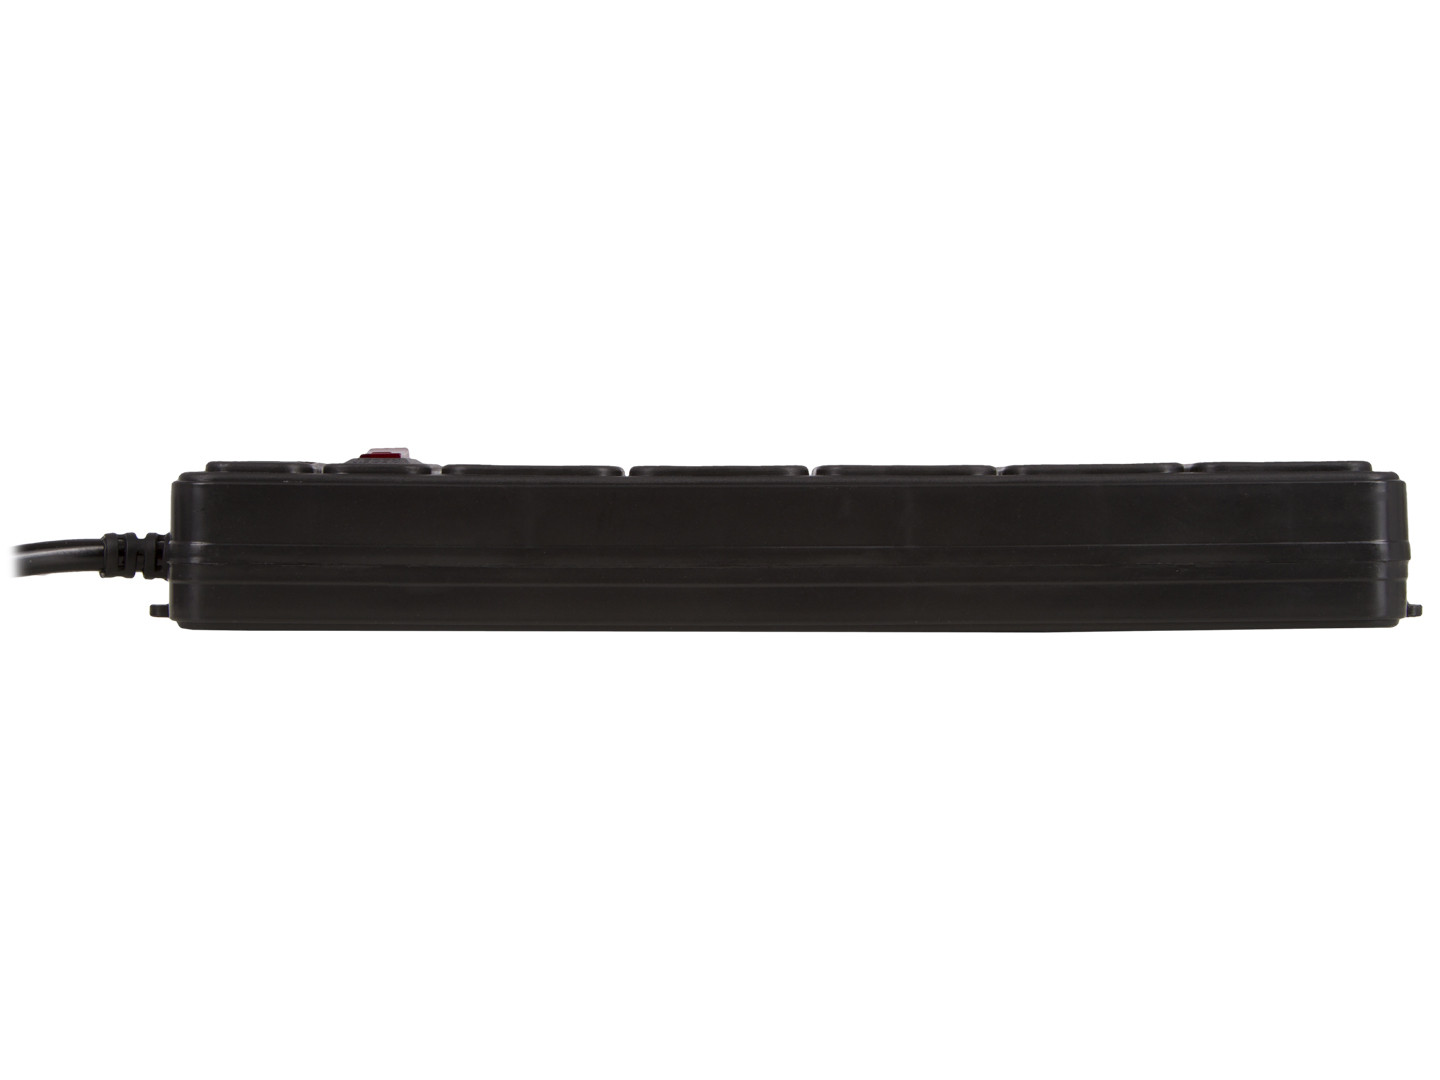 Удлинитель сетевой универсальный ULTRA SSB5-1.8, 1.8 метра, 5 розеток, цвет серый.